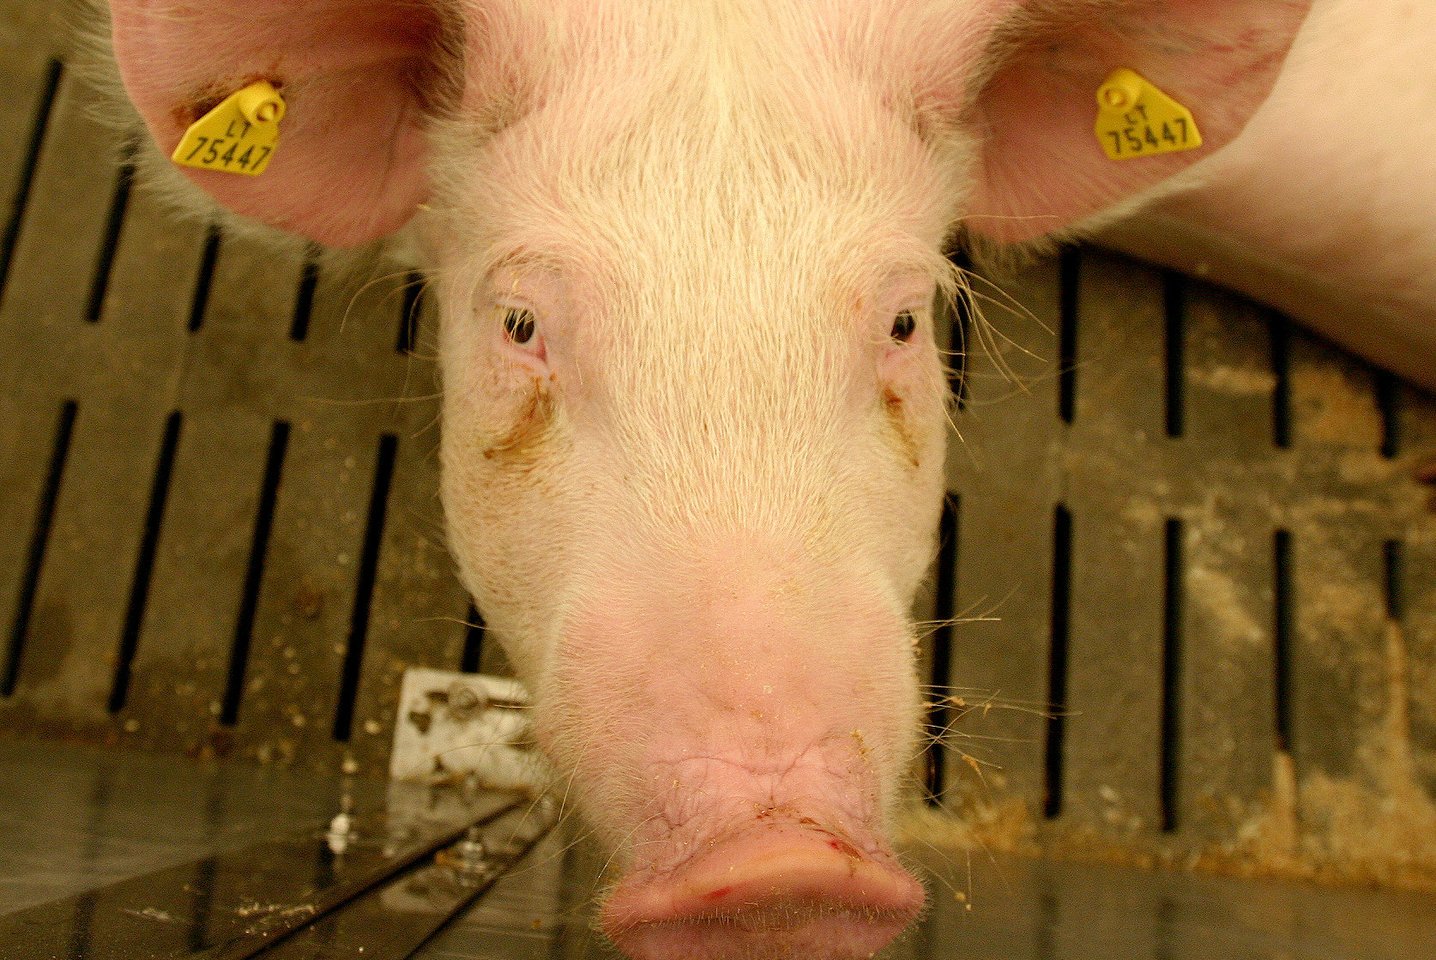 AKM virusas nustatytas šiaurinėje Graikijoje, Serės regione esančiame kiaulių ūkyje, kuriame laikytos 32 kiaulės.<br>M.Vizbelio asociatyvi nuotr.